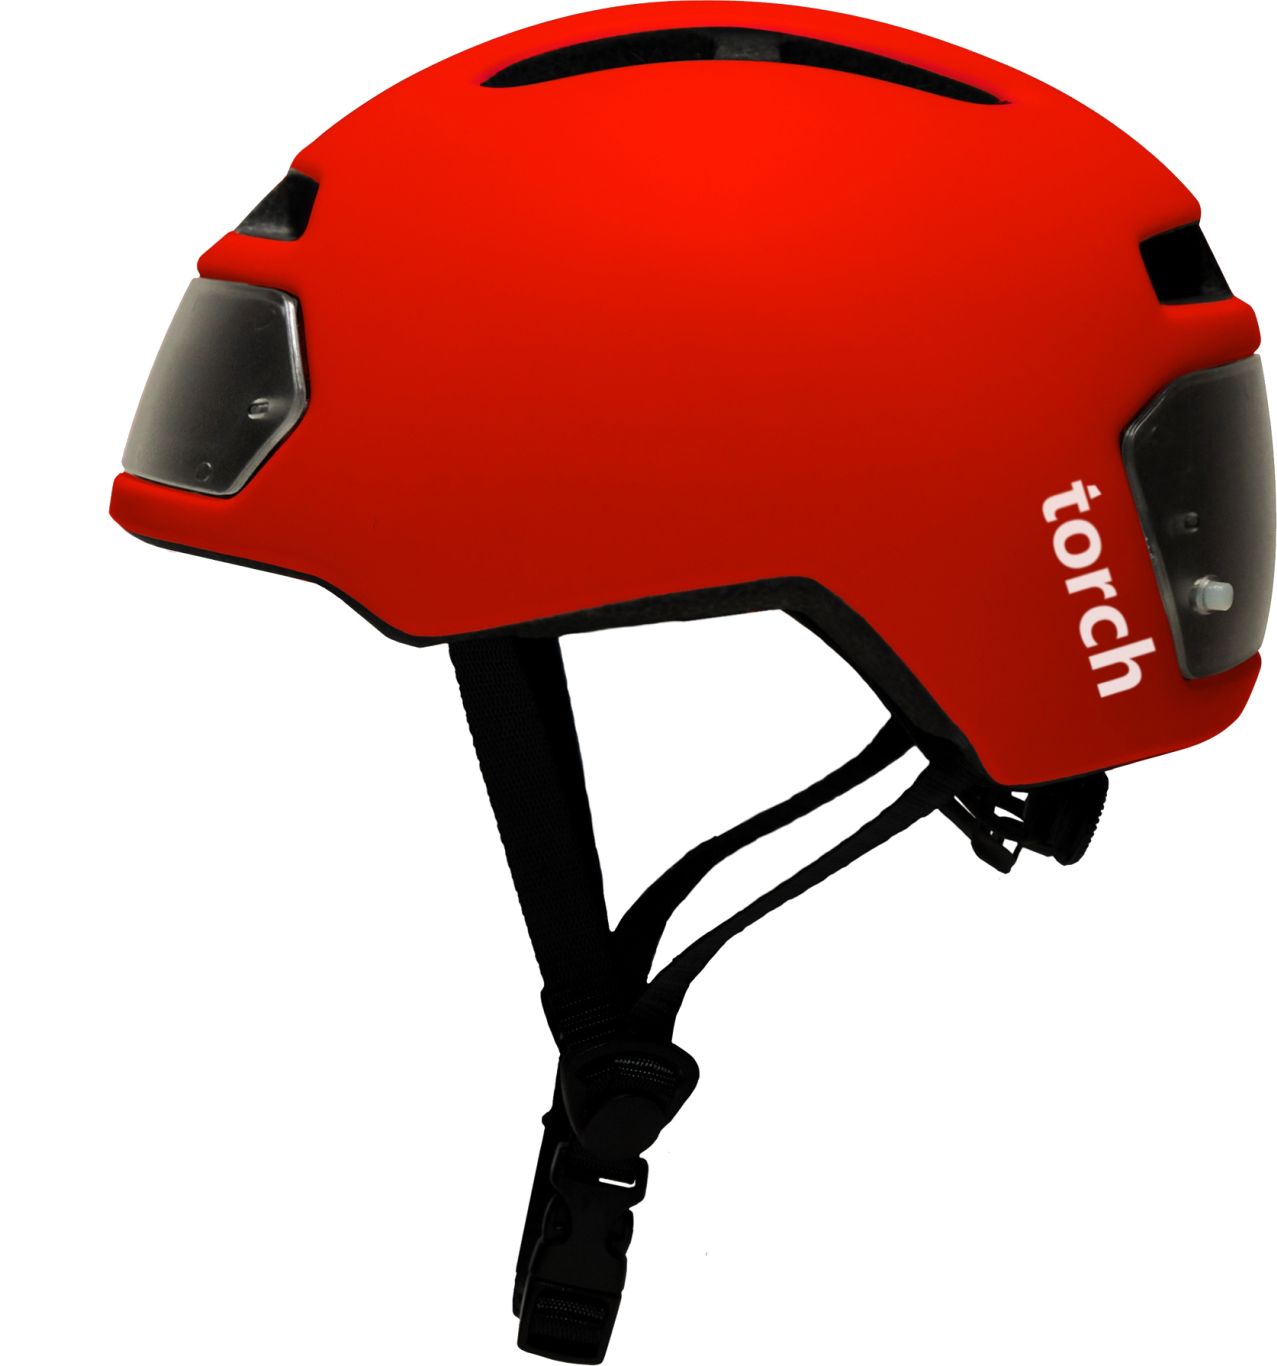 Bicycle helmet PNG image    图片编号:9837